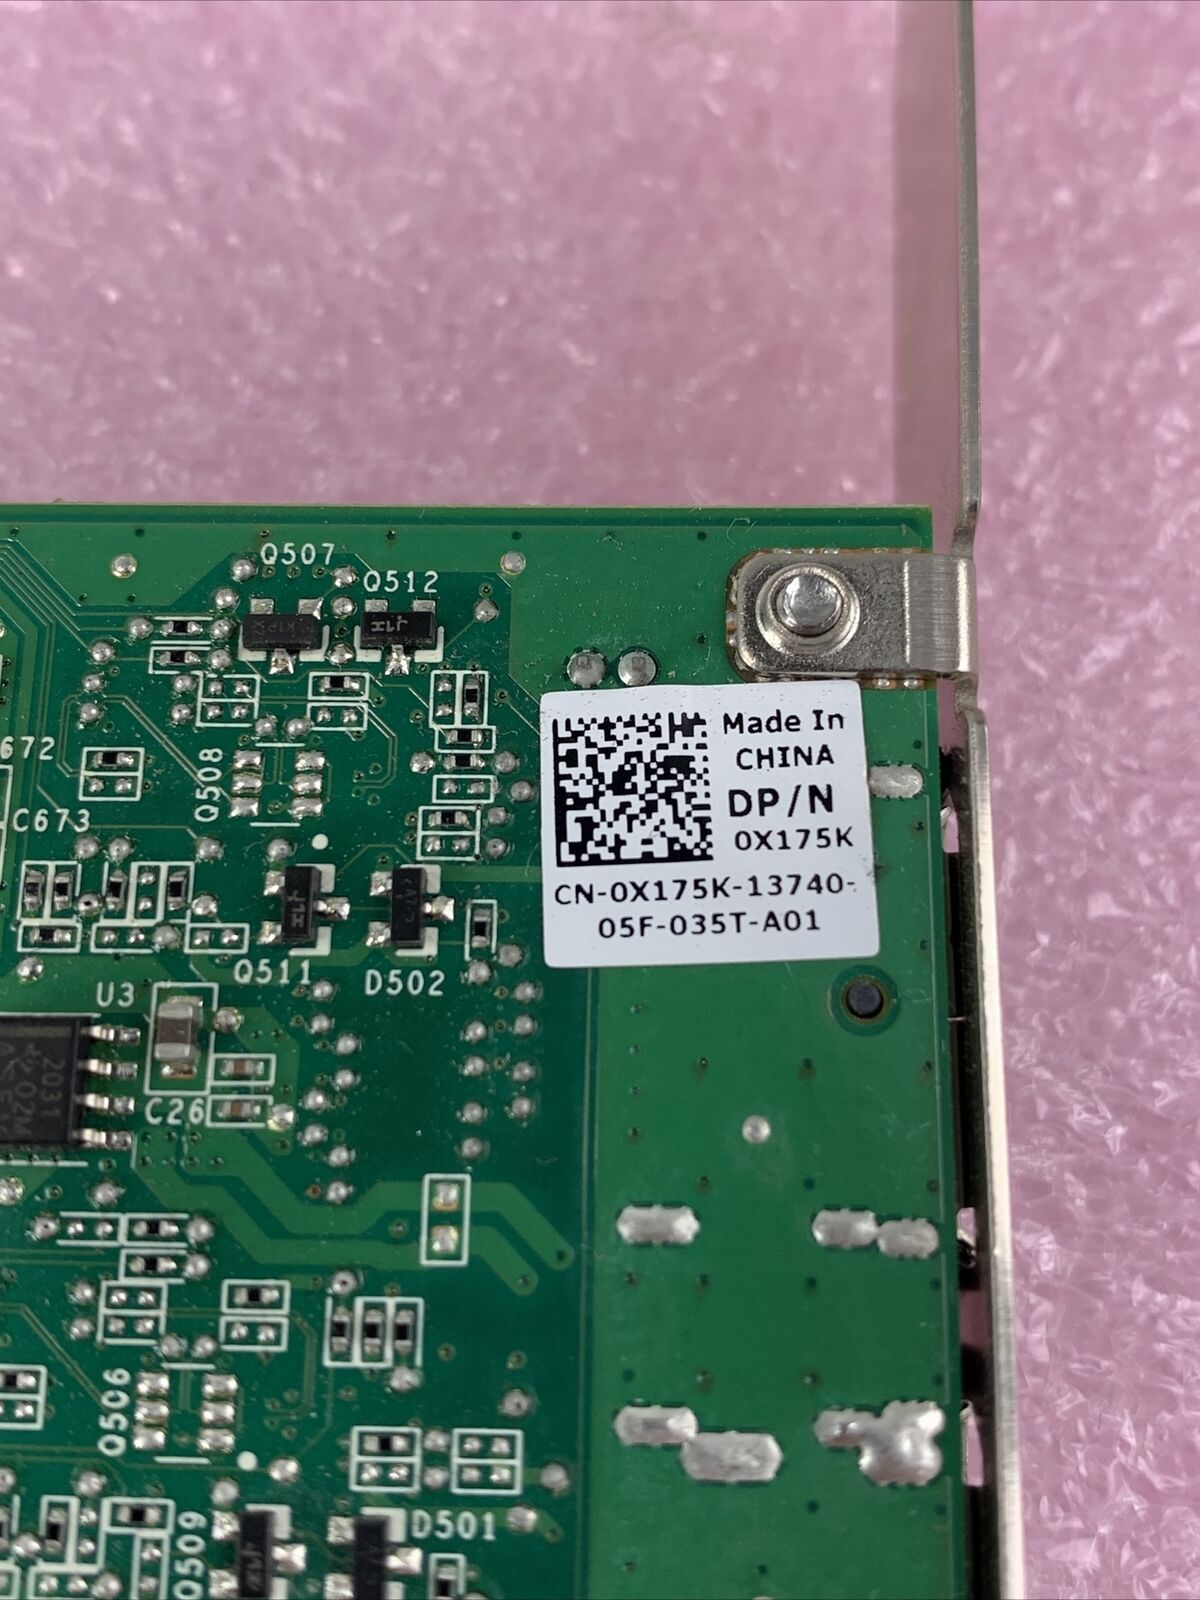 NVIDIA Quadro NVS 295 PNY 256 MB GDDR3 PCIe x16 Dual DP Graphics Video Card